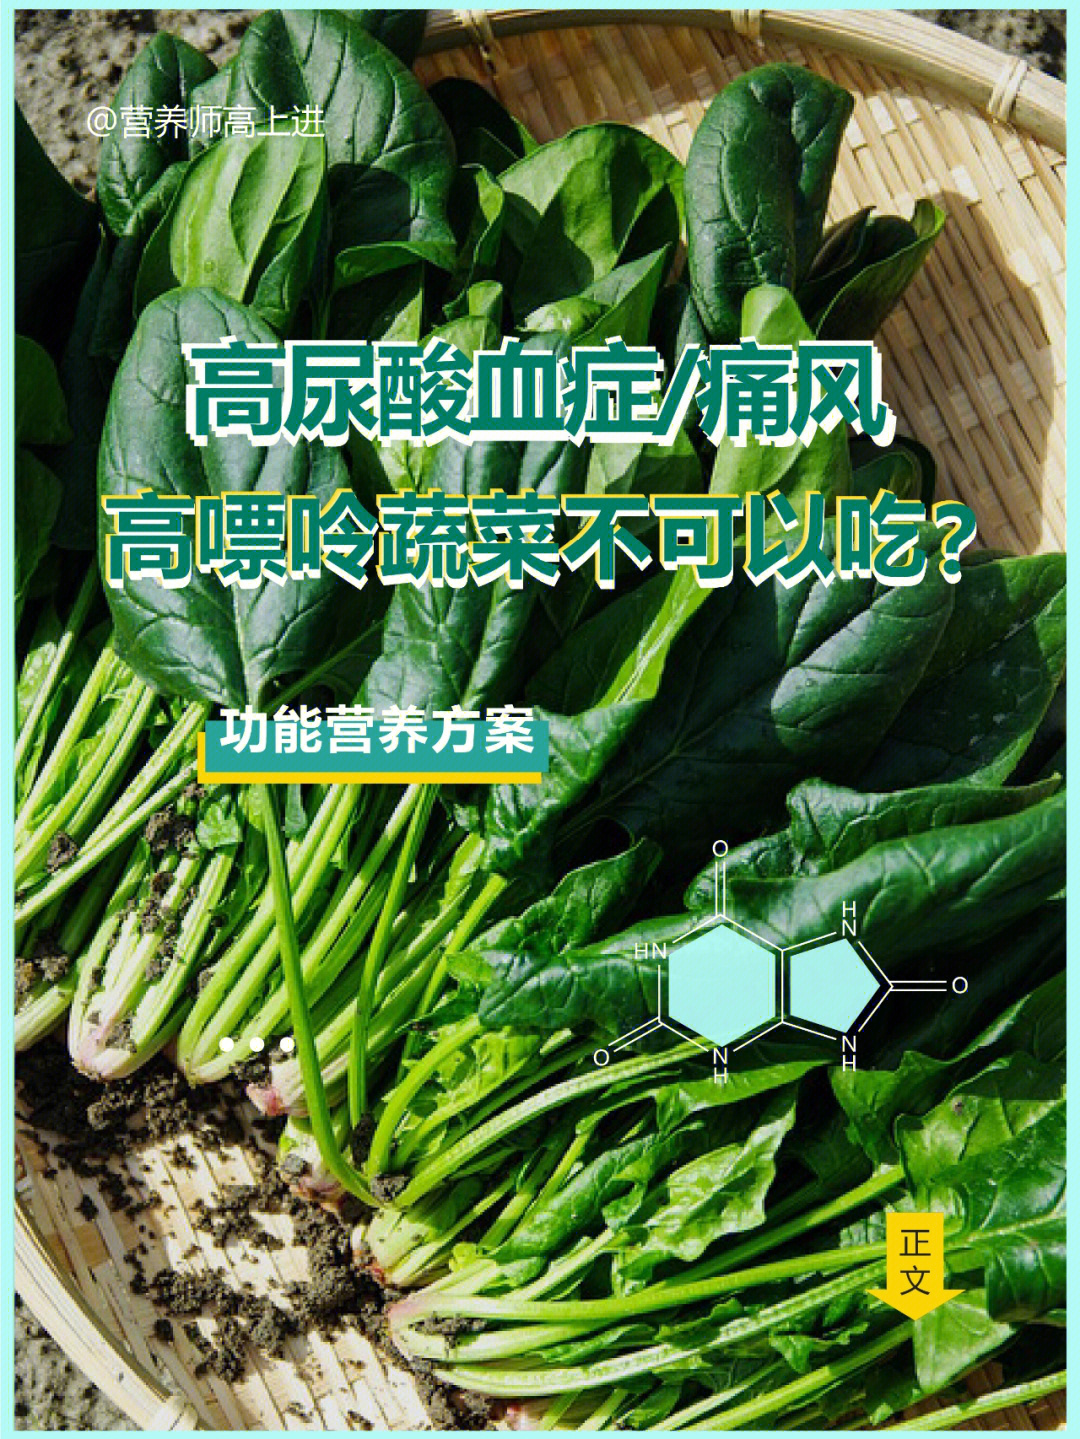 高尿酸血症/痛风6015高嘌呤蔬菜也可以吃